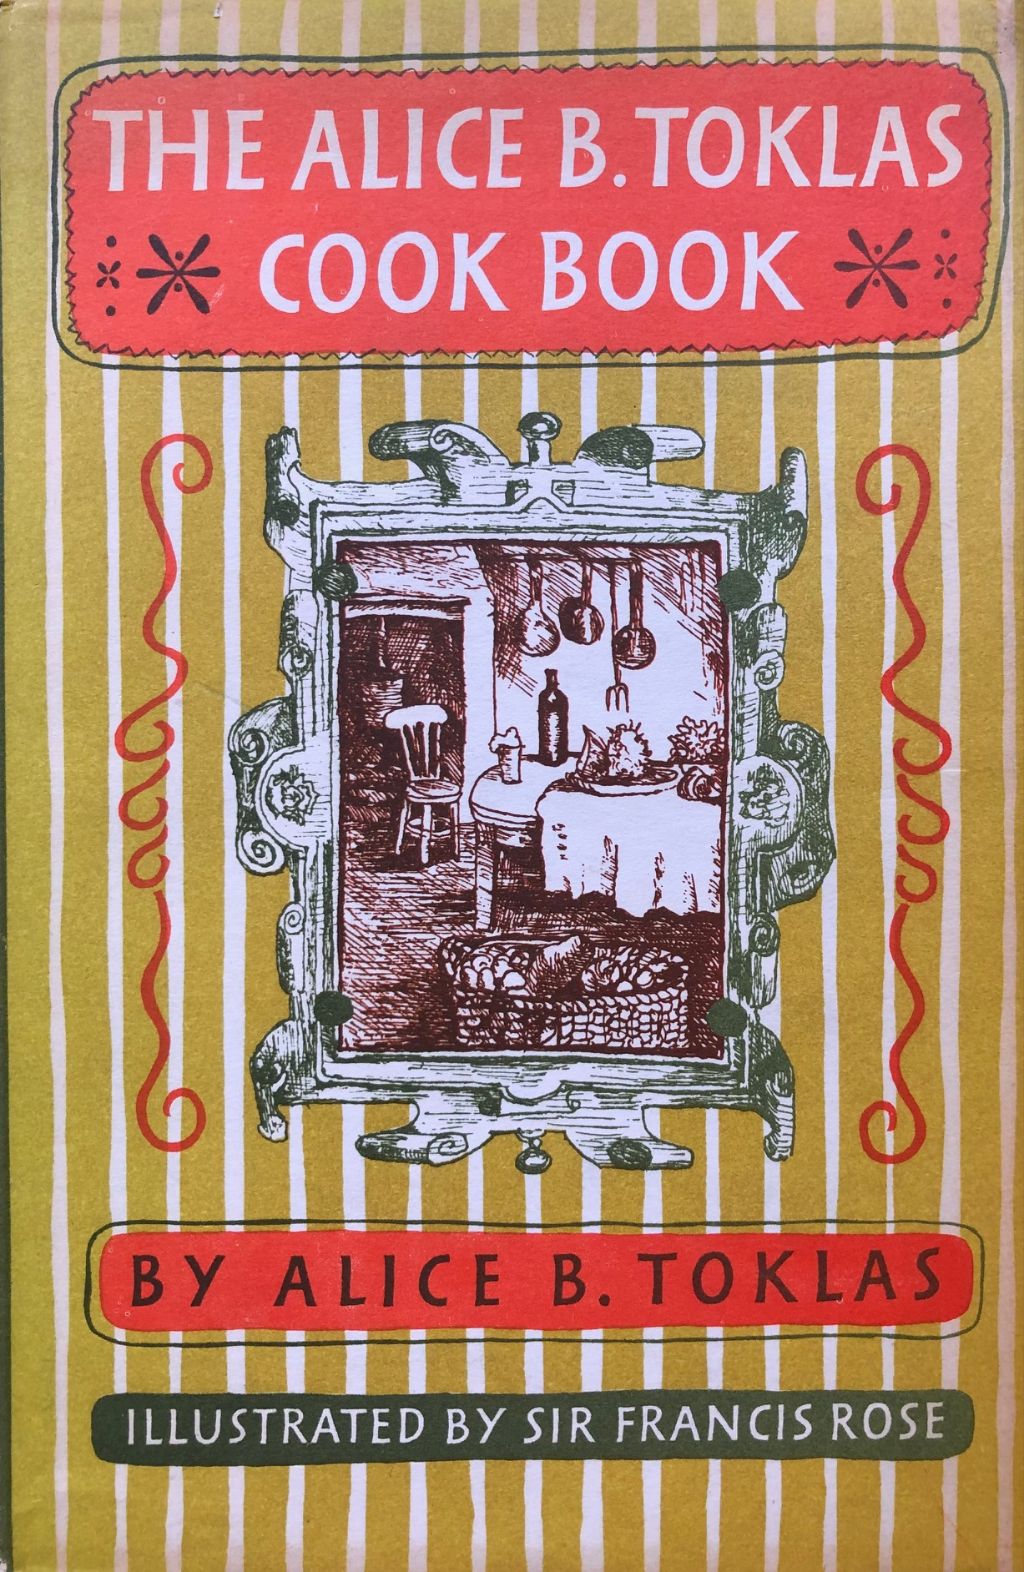 (Food Writing) Toklas, Alice B. The Alice B. Toklas Cook Book.